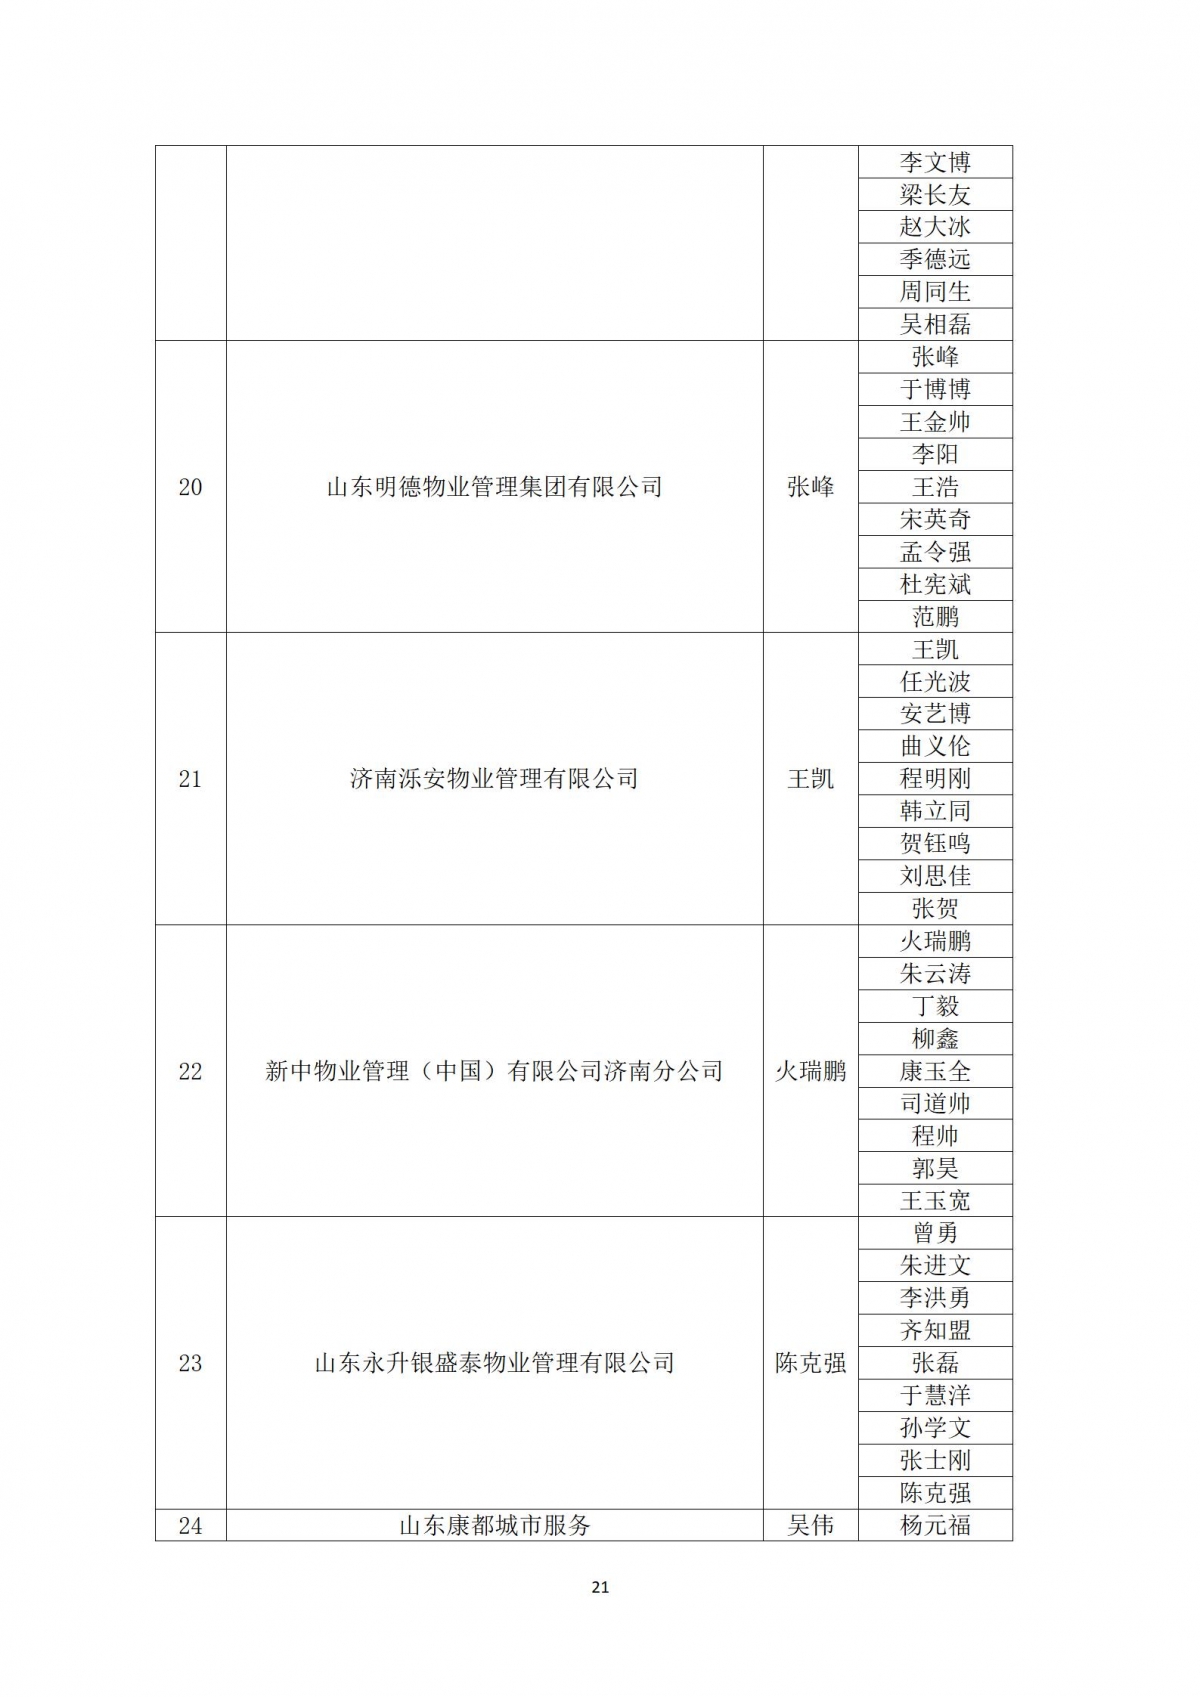 关于“天城杯”第七届济南市物业服务行业职业技能竞赛选手名单的公示_21